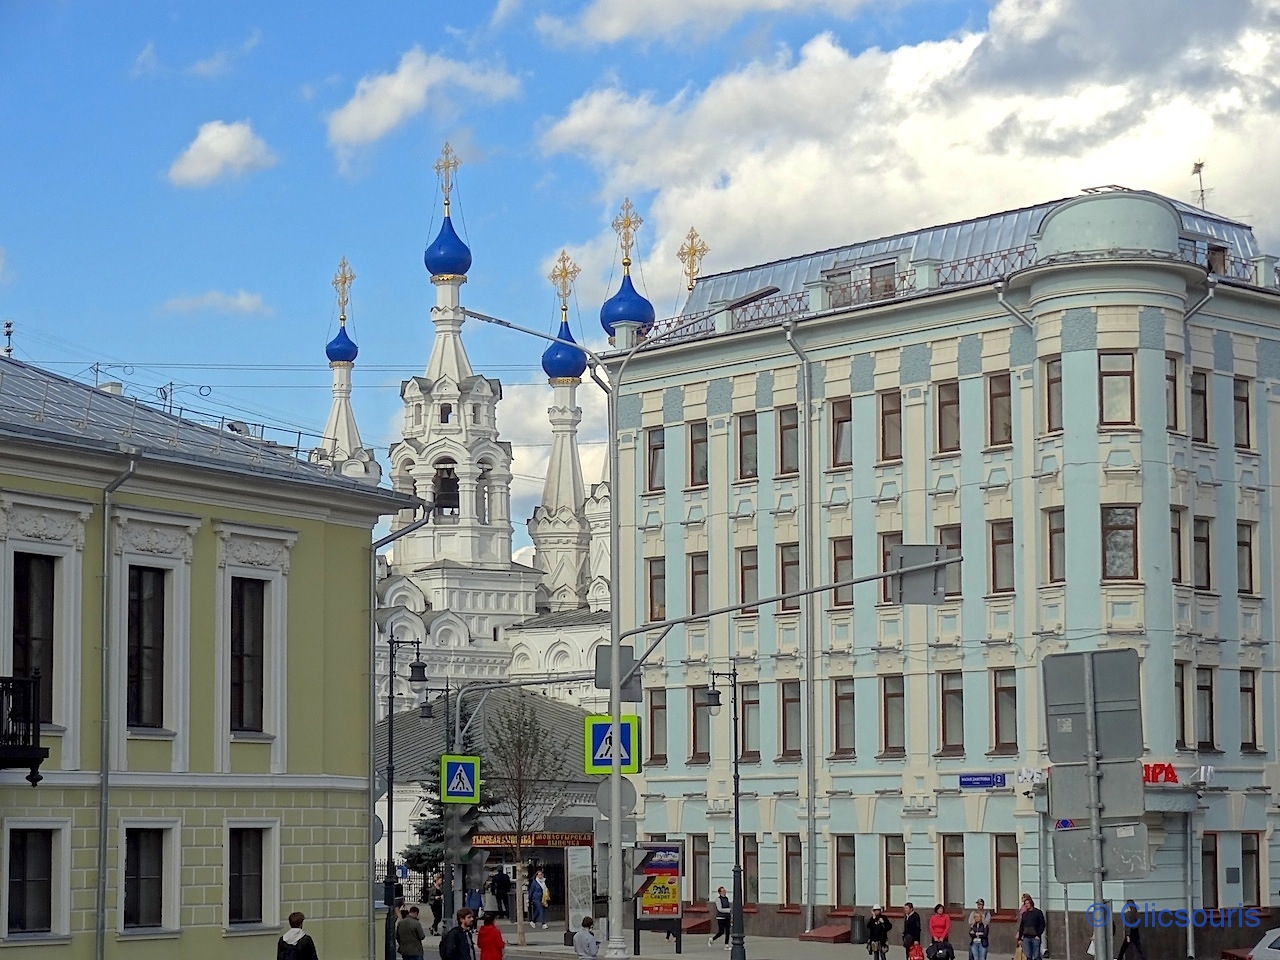 Moscou église de la Nativité de Poutinki